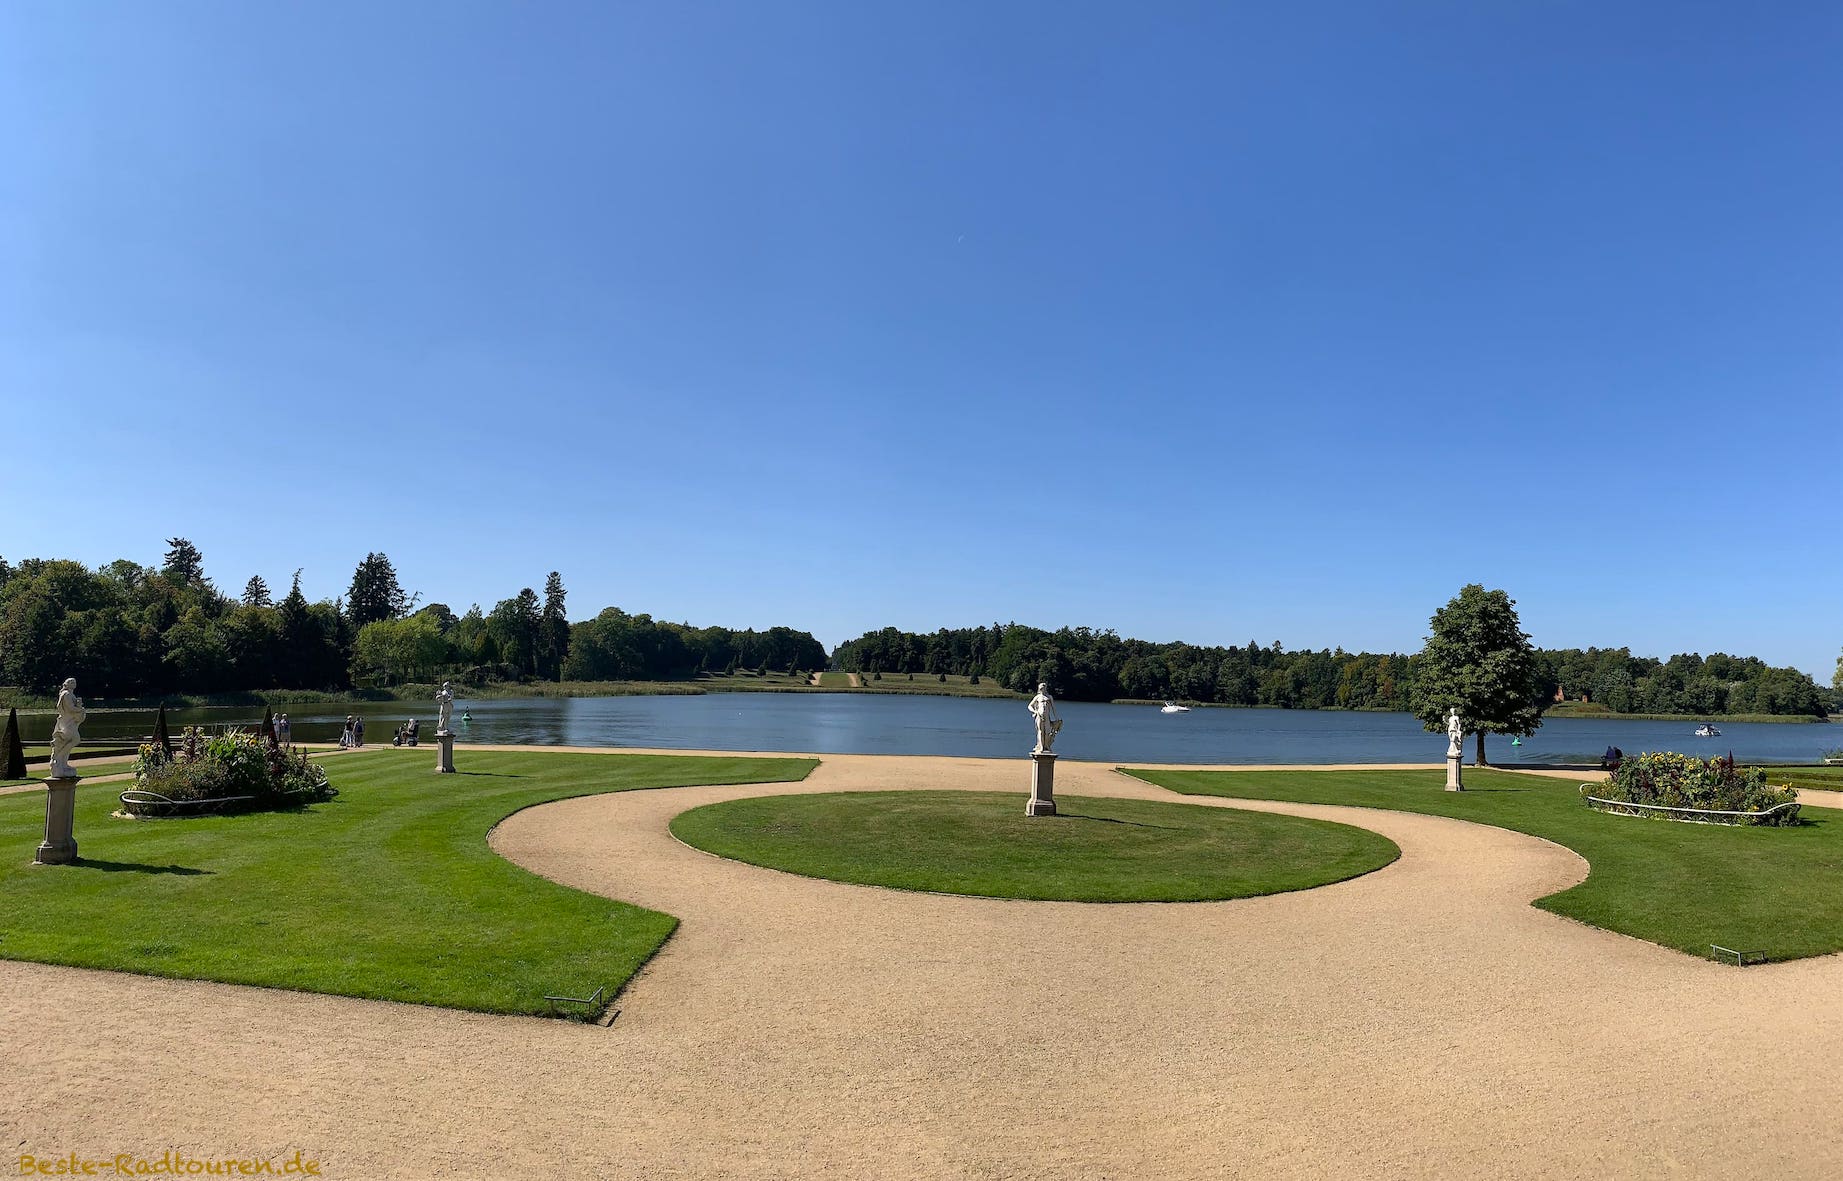 Foto von den Kolonnaden vom Schloss Rheinsberg aus: Der Schlossgarten am See